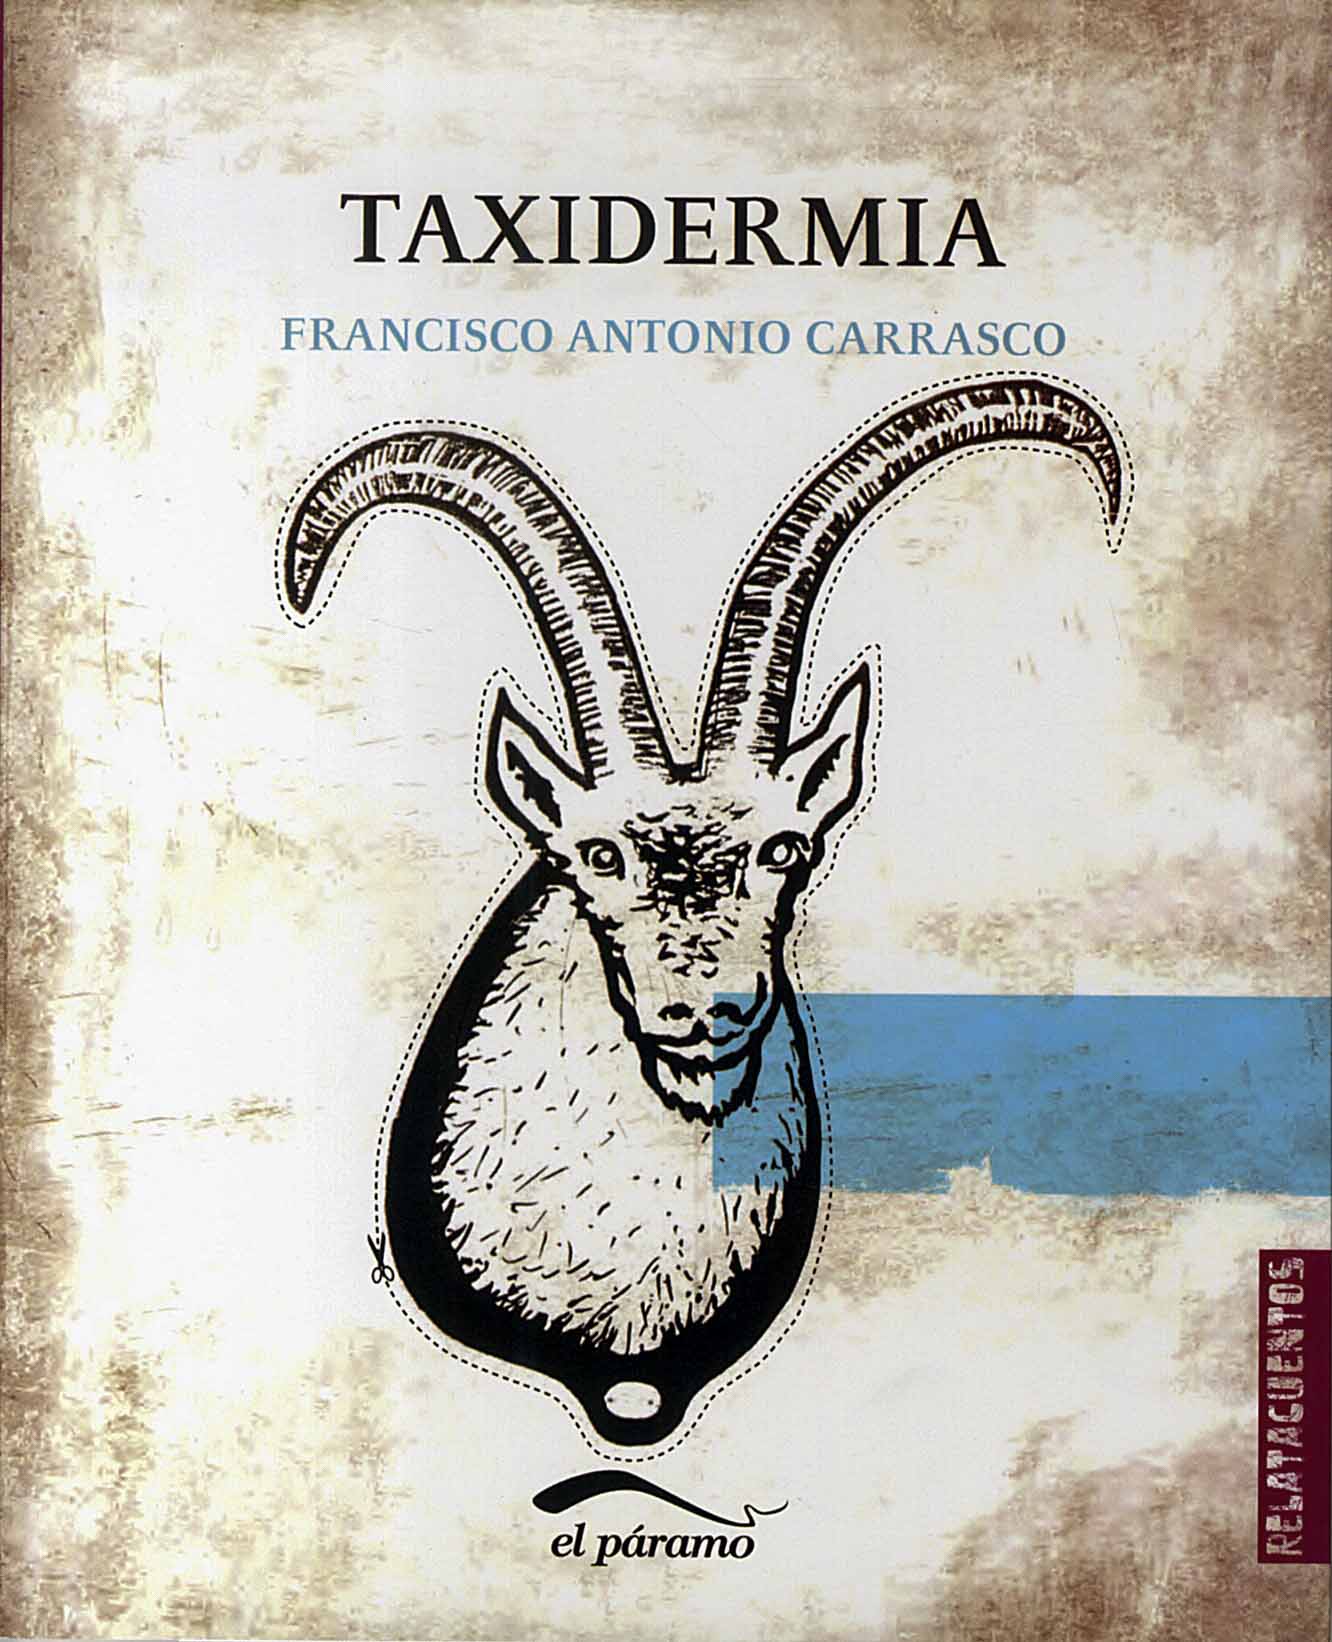 Francisco Antonio Carrasco - Taxidermia